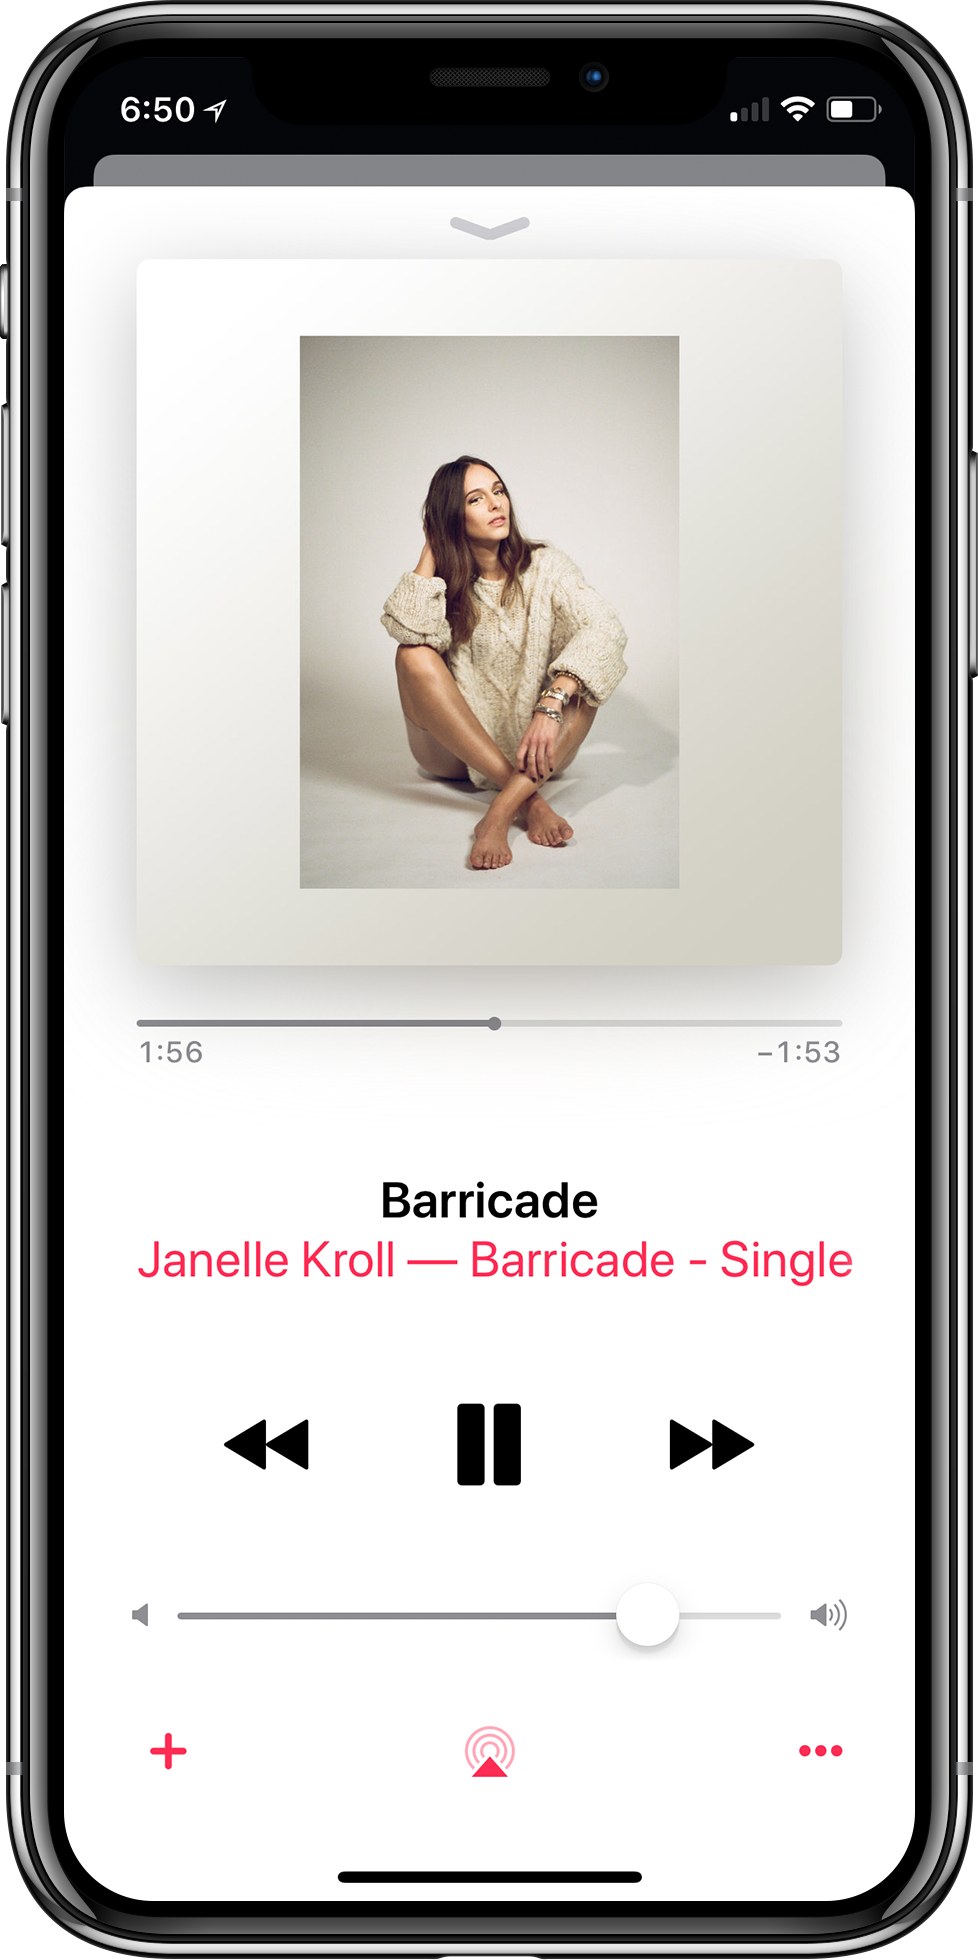 jk-barricade-iphonex-applemusic